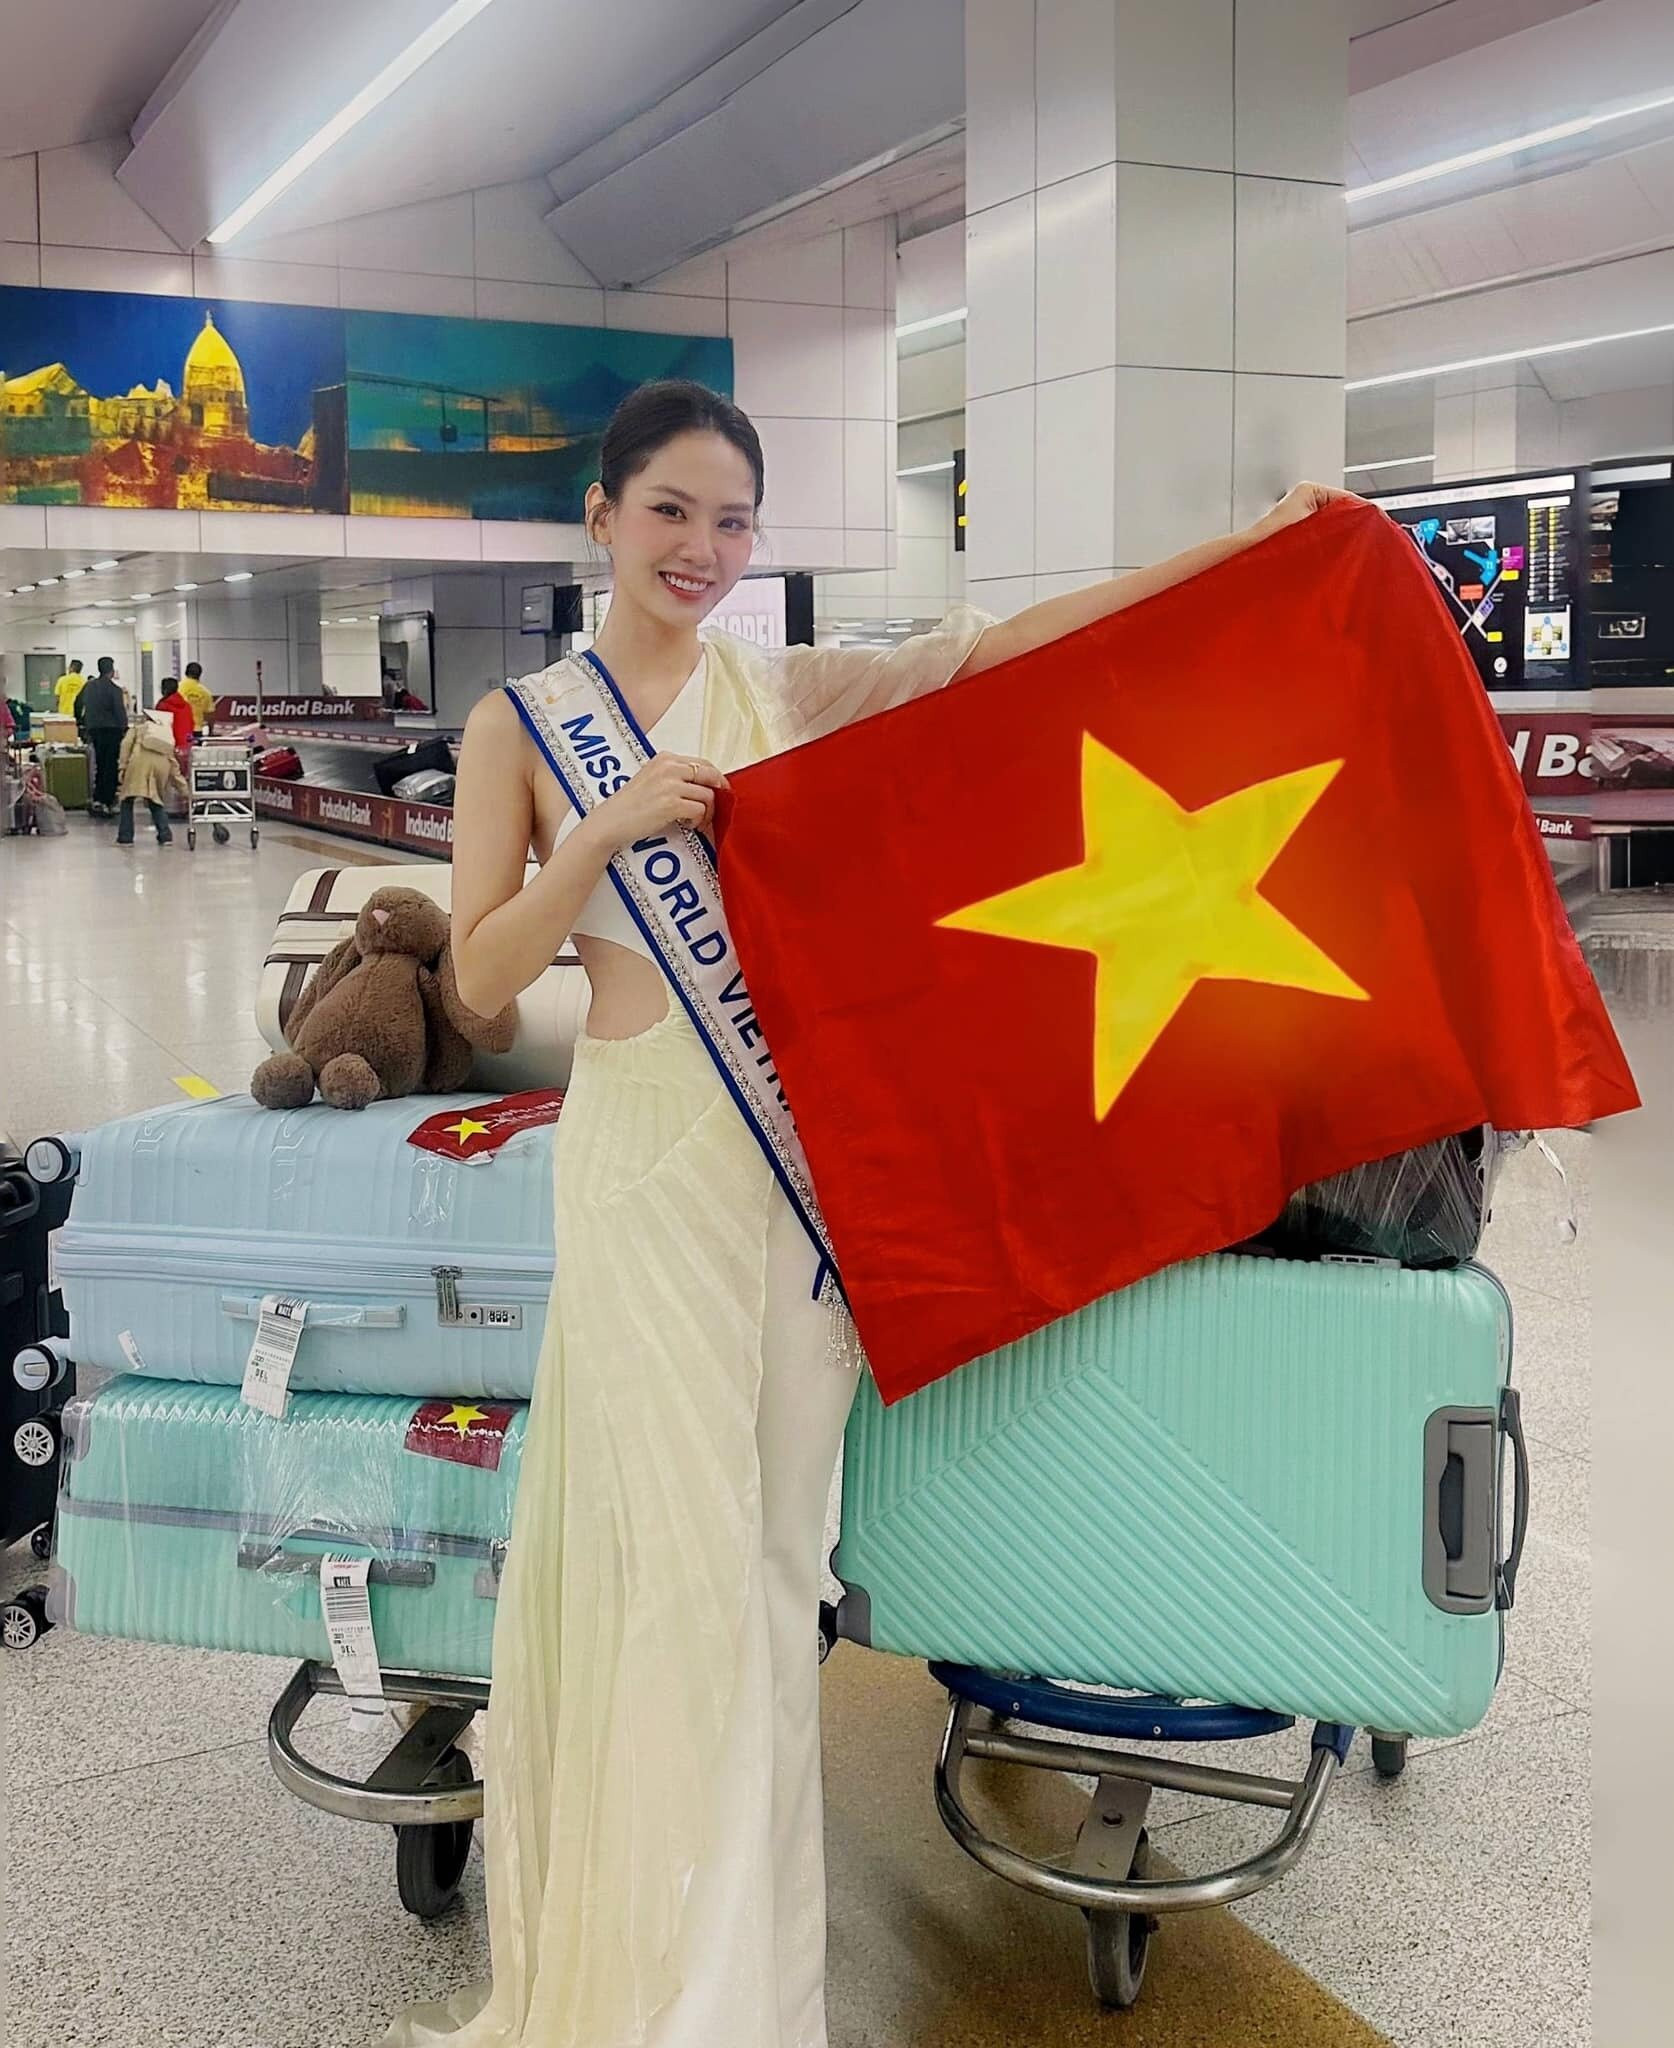 Hoa hậu Mai Phương là đại diện Việt Nam đến với Miss World - Hoa hậu thế giới lần thứ 71. Cuộc thi năm nay diễn ra tại Ấn Độ và quy tụ 113 thí sinh đến từ khắp thế giới. Đại diện Việt Nam bắt đầu hành trình từ ngày 16/2 với hơn 140 kg hành lý.